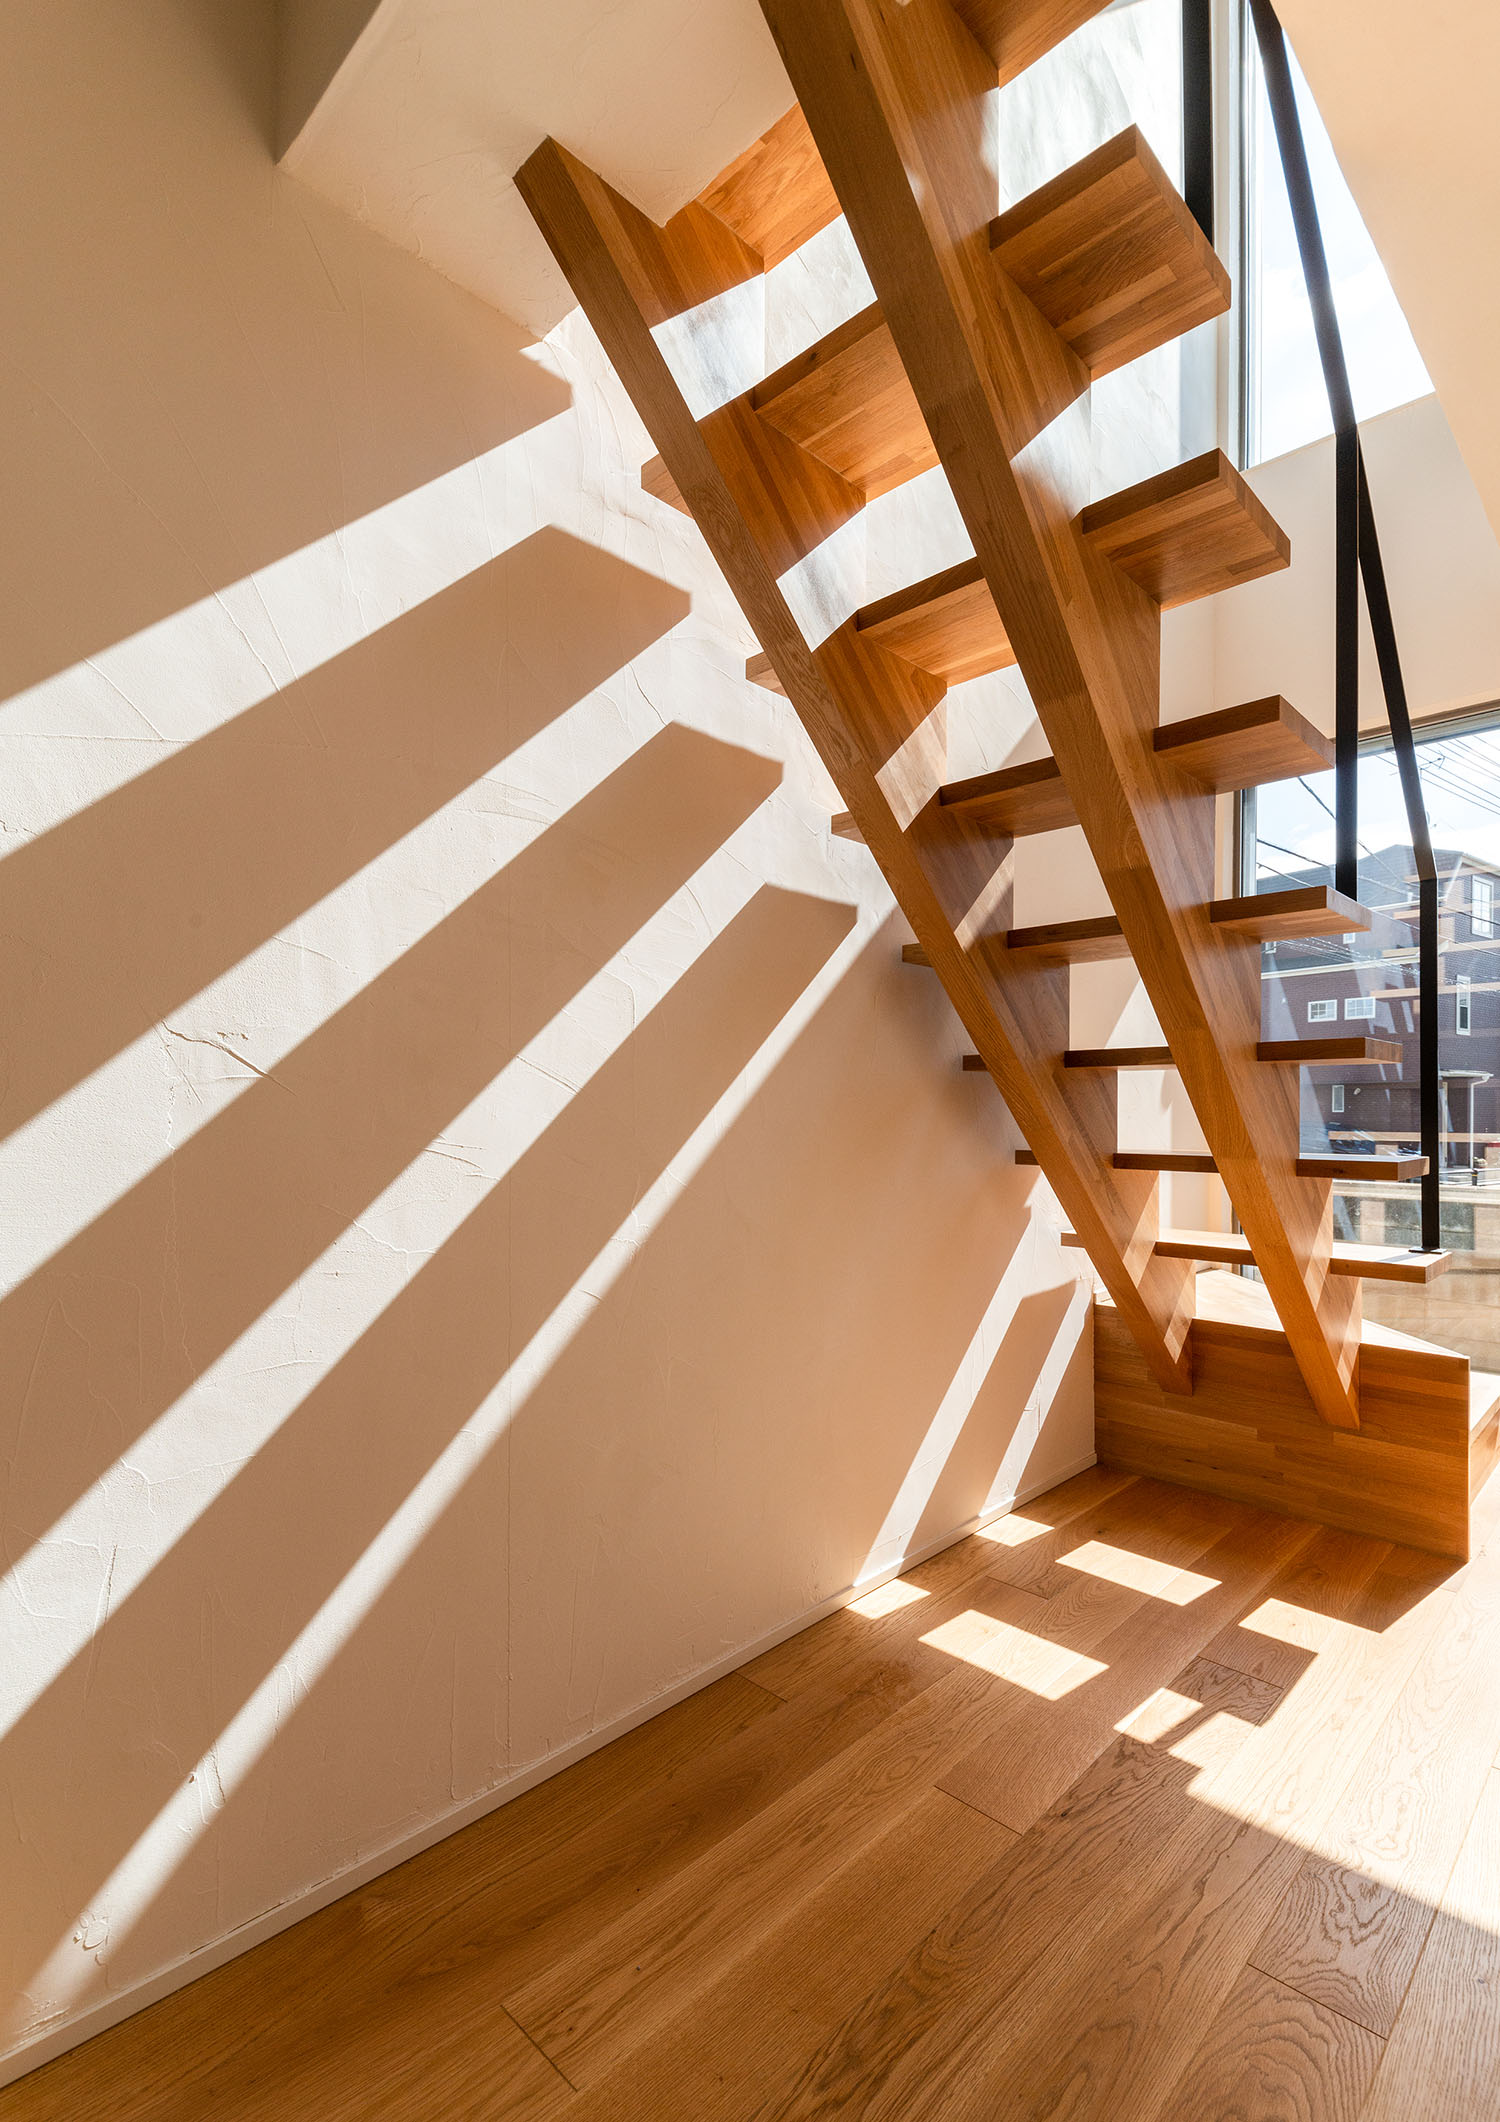 窓から自然光が入る木製のスケルトン階段・デザイン住宅